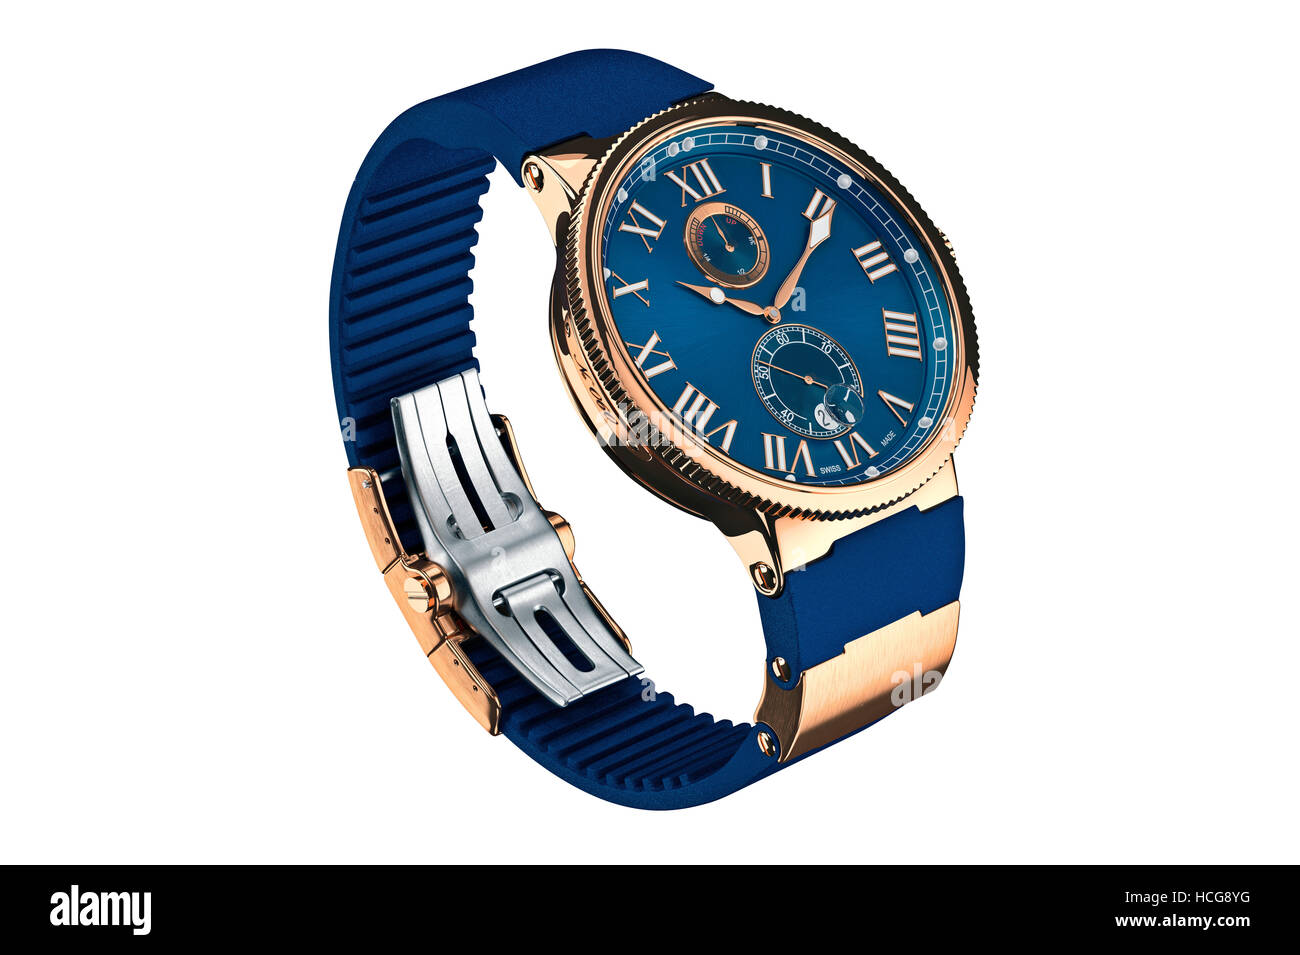 Wrist watch classic Stock Photo - Alamy